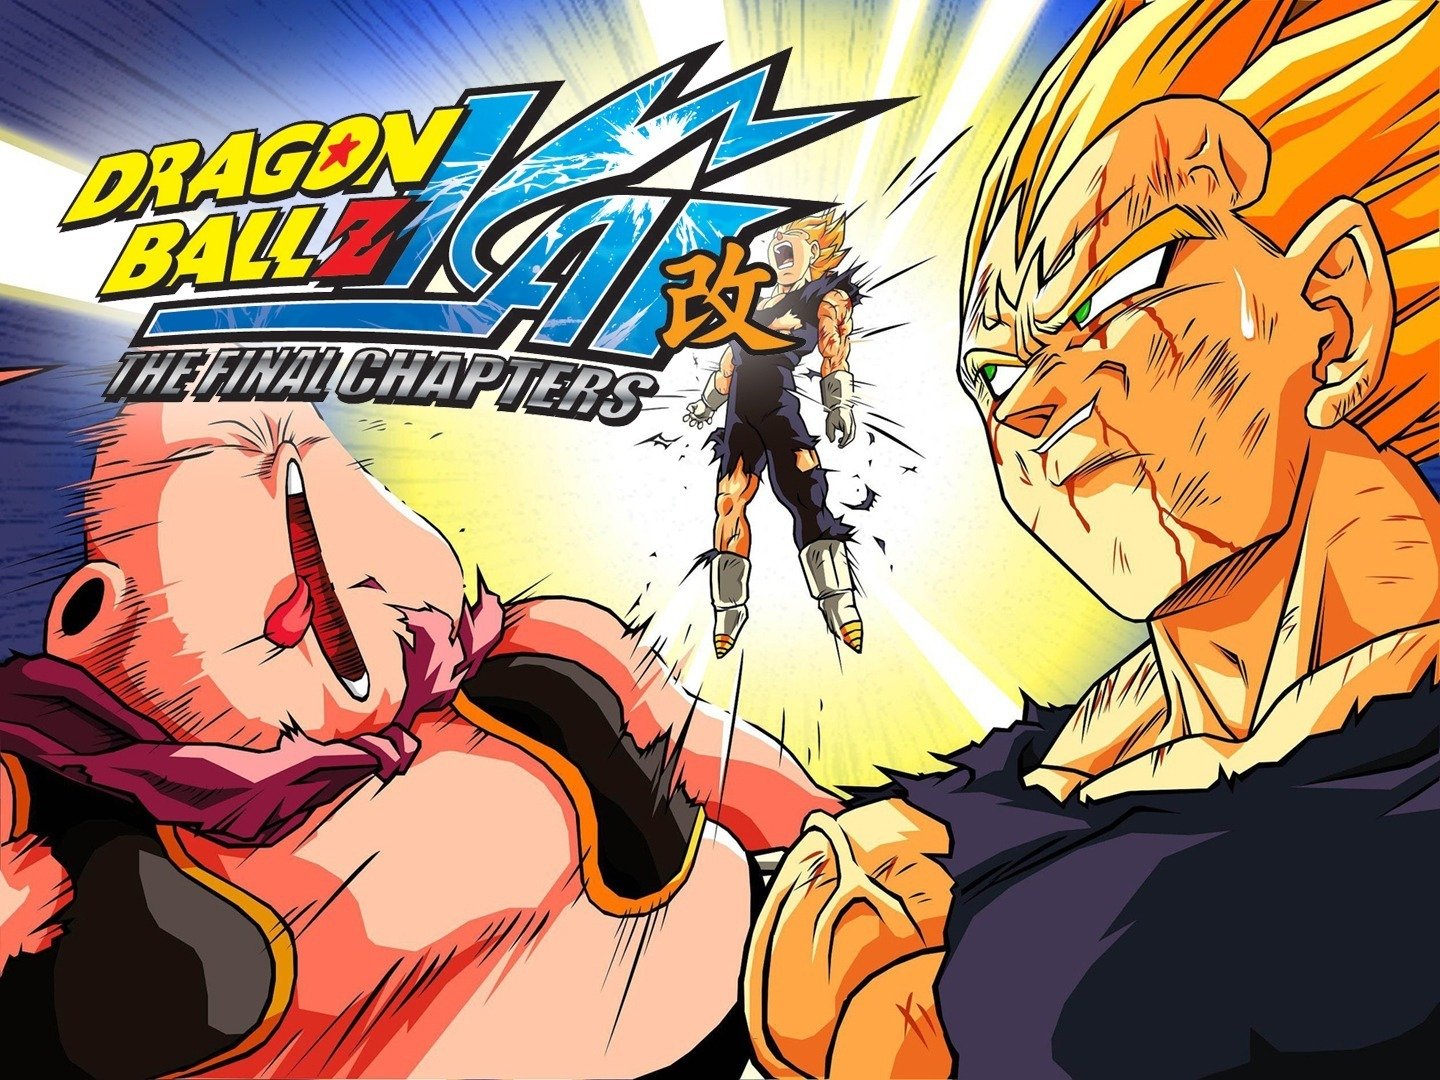 Dragon Ball Z Kai Season 5-6 World Tournament Saga Hindi Dubbed Episodes Download HD [Episode 1-42 Added]